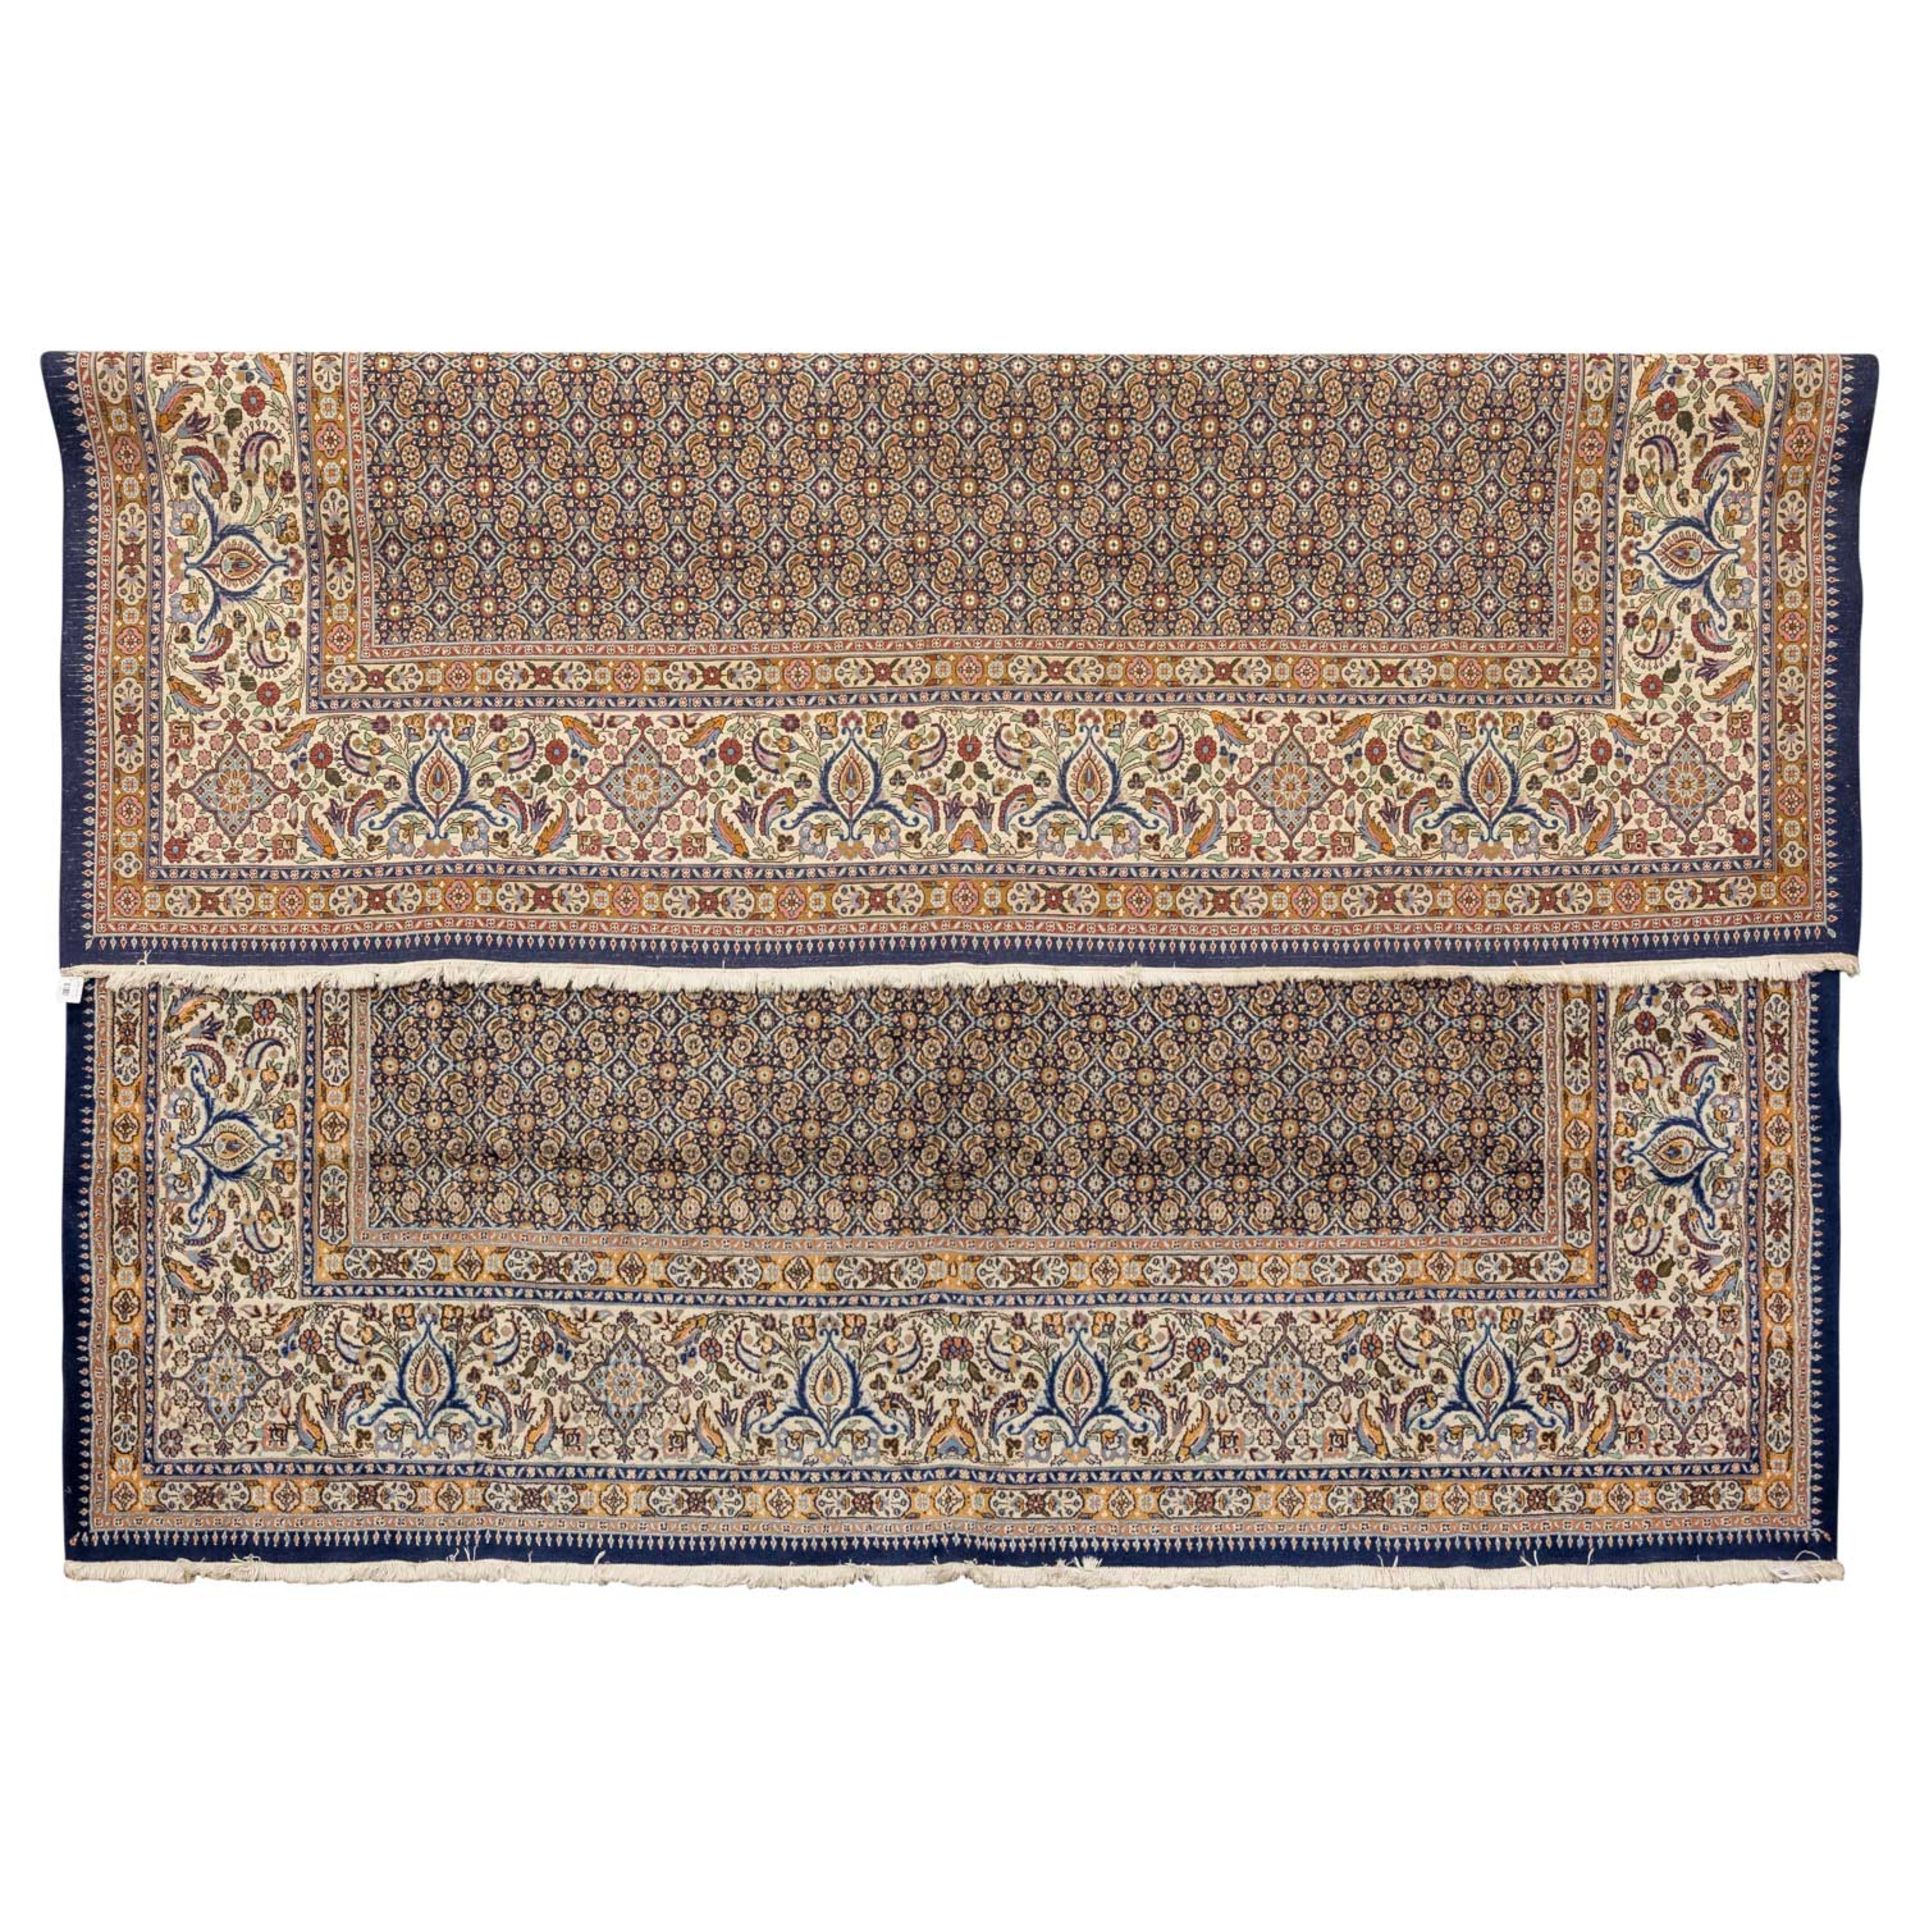 Orientteppich 'BIDJAR', 20. Jh. 300x300 cm. - Image 2 of 3